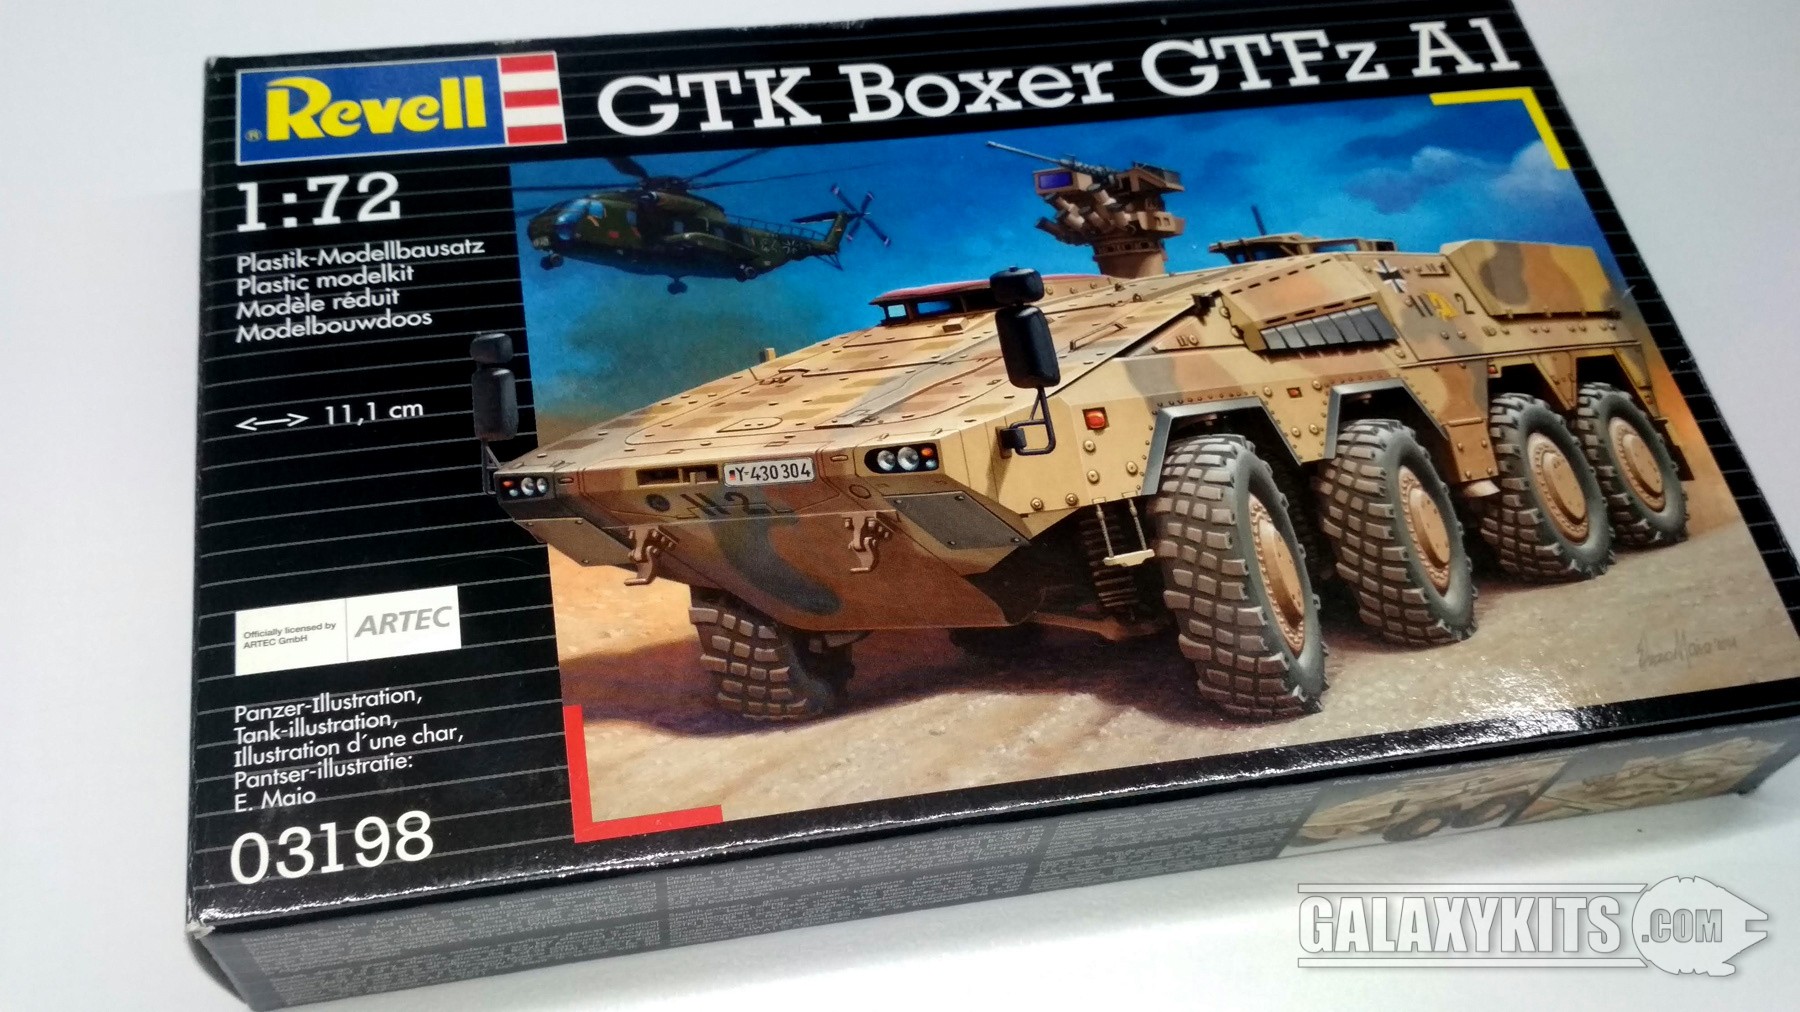 GTK Boxer GTFz A1 (03198) / 1:72 / Revell